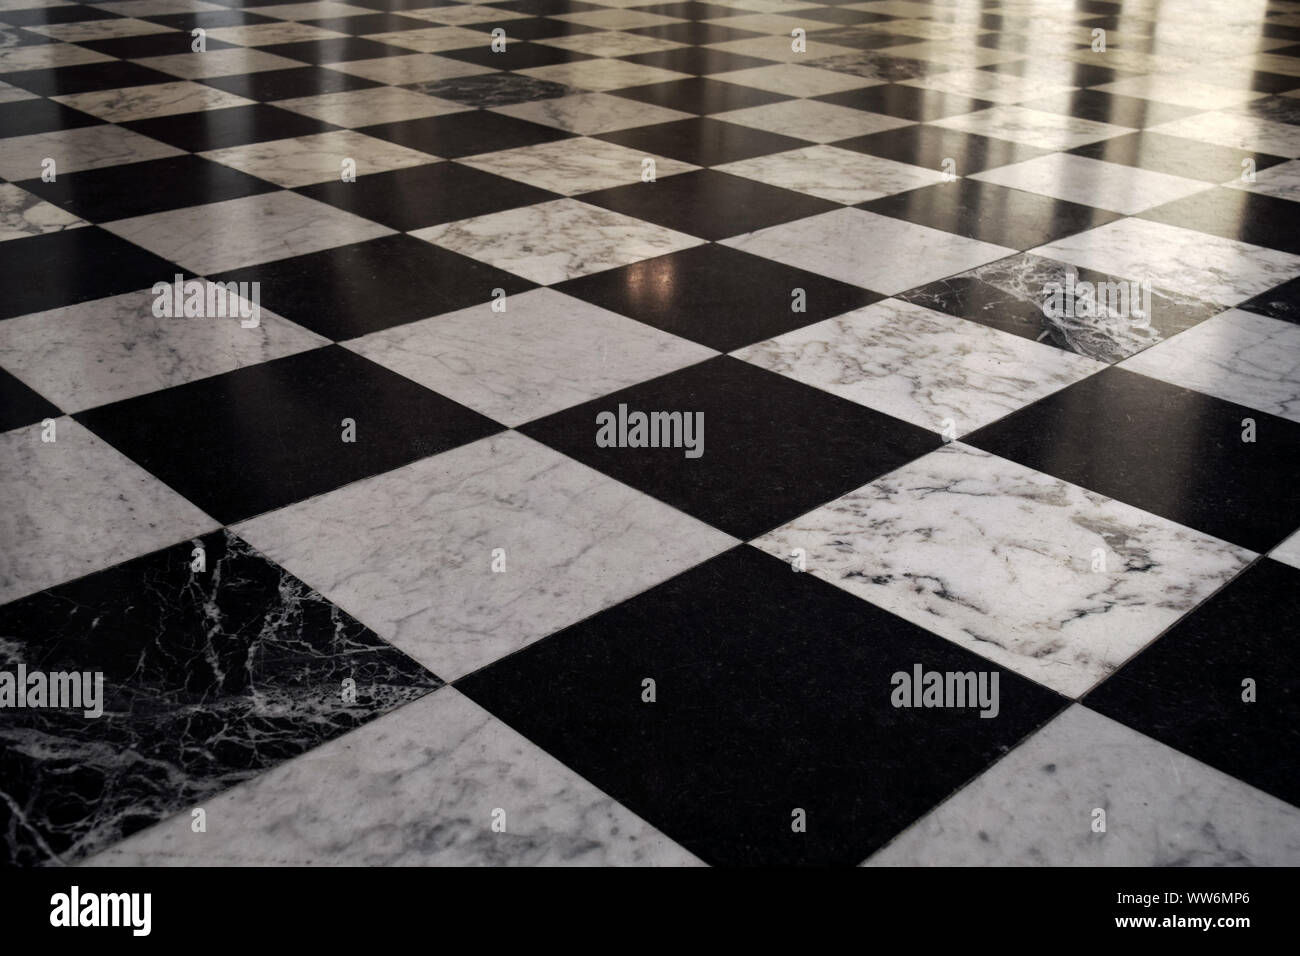 1:12th Clásico Negro y blanco grande de tablero de ajedrez de baldosas de diseño 